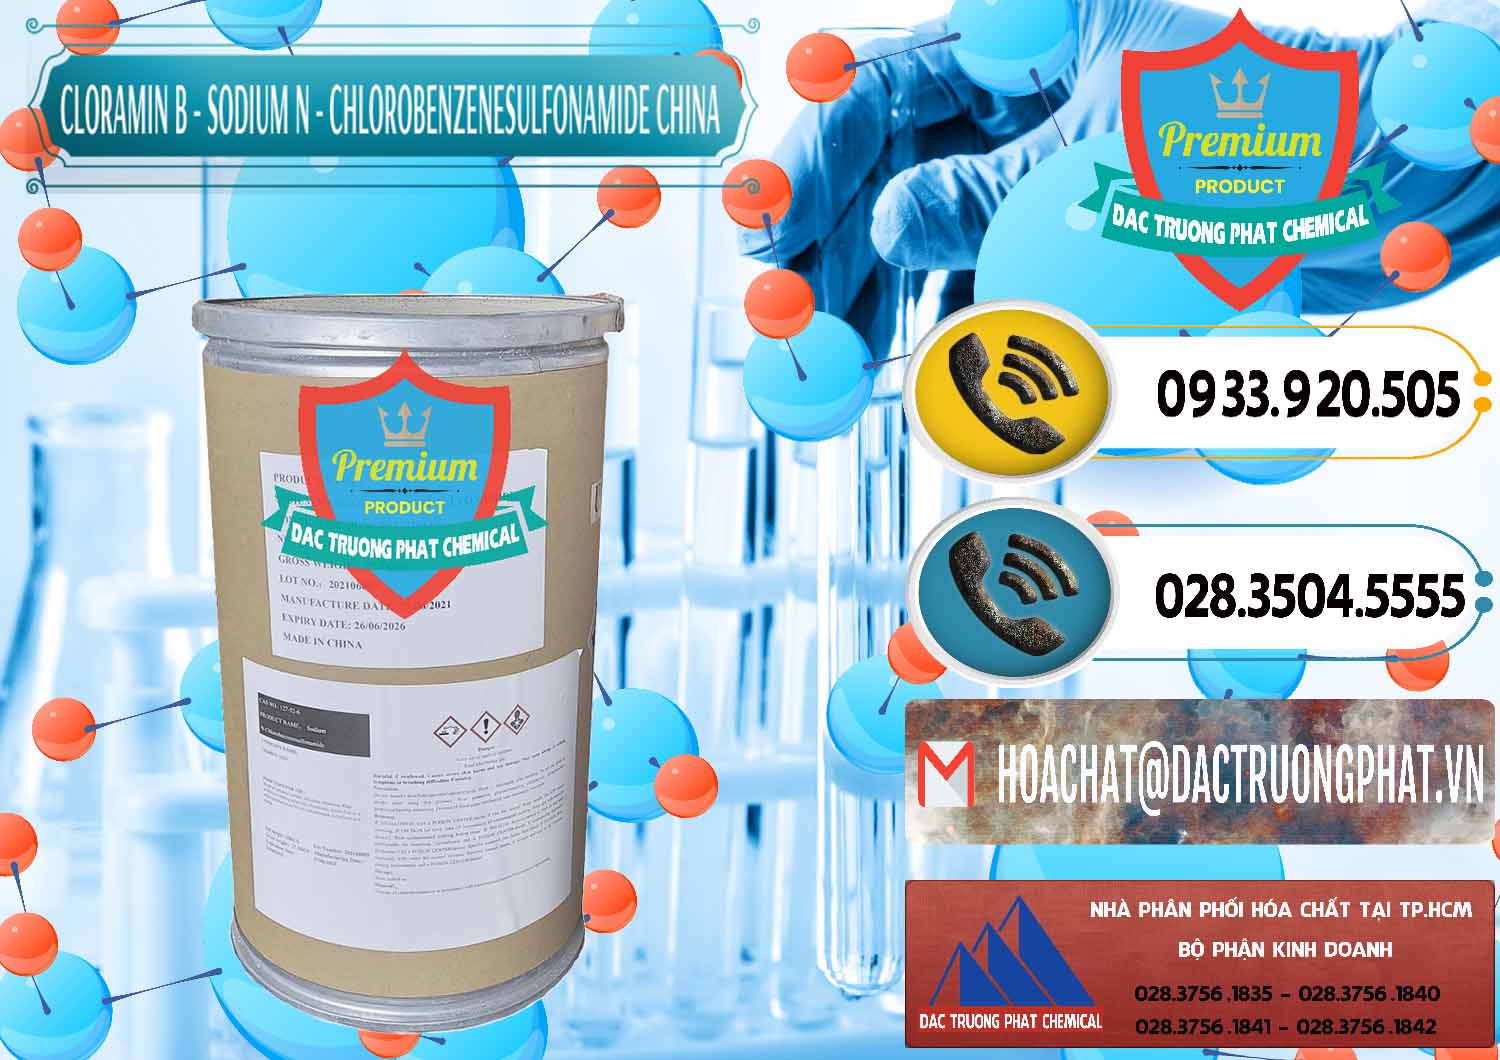 Cty bán ( phân phối ) Cloramin B Khử Trùng, Diệt Khuẩn Trung Quốc China - 0298 - Đơn vị cung cấp _ phân phối hóa chất tại TP.HCM - hoachatdetnhuom.vn